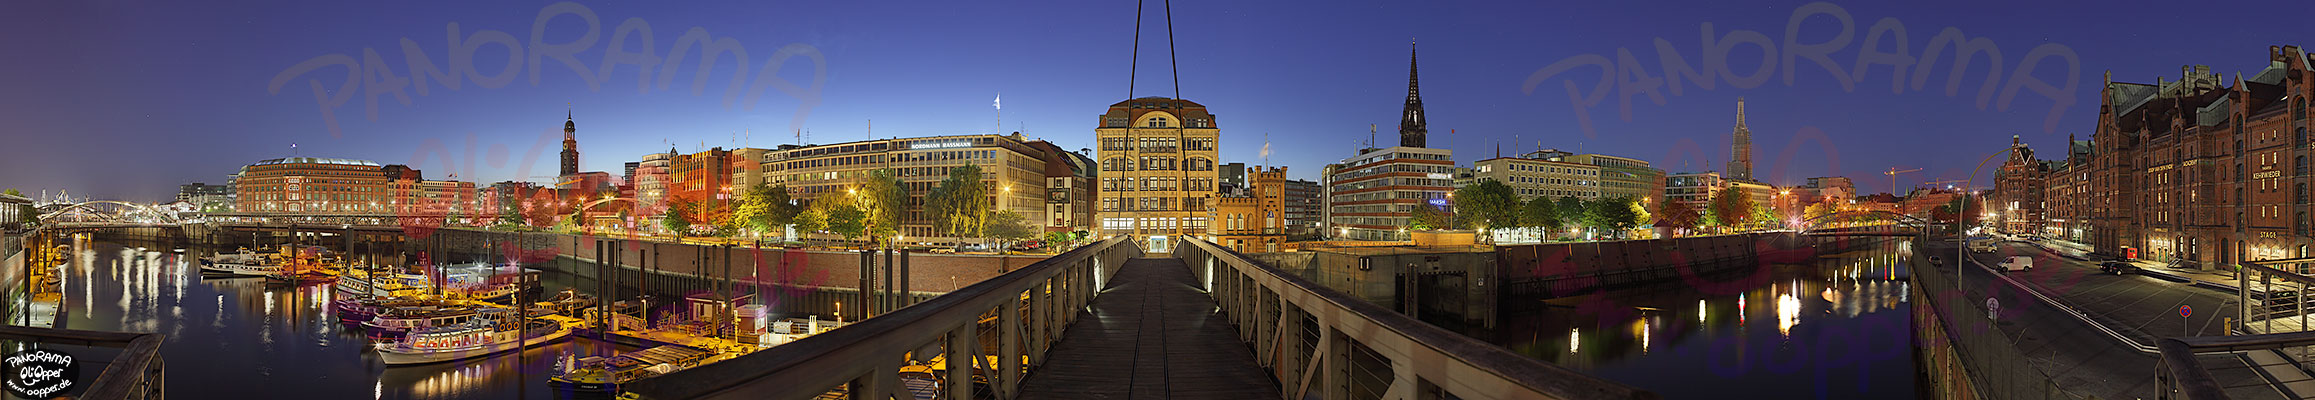 Altstadt Hamburg - Skyline bei Nacht - p046 - (c) by Oliver Opper